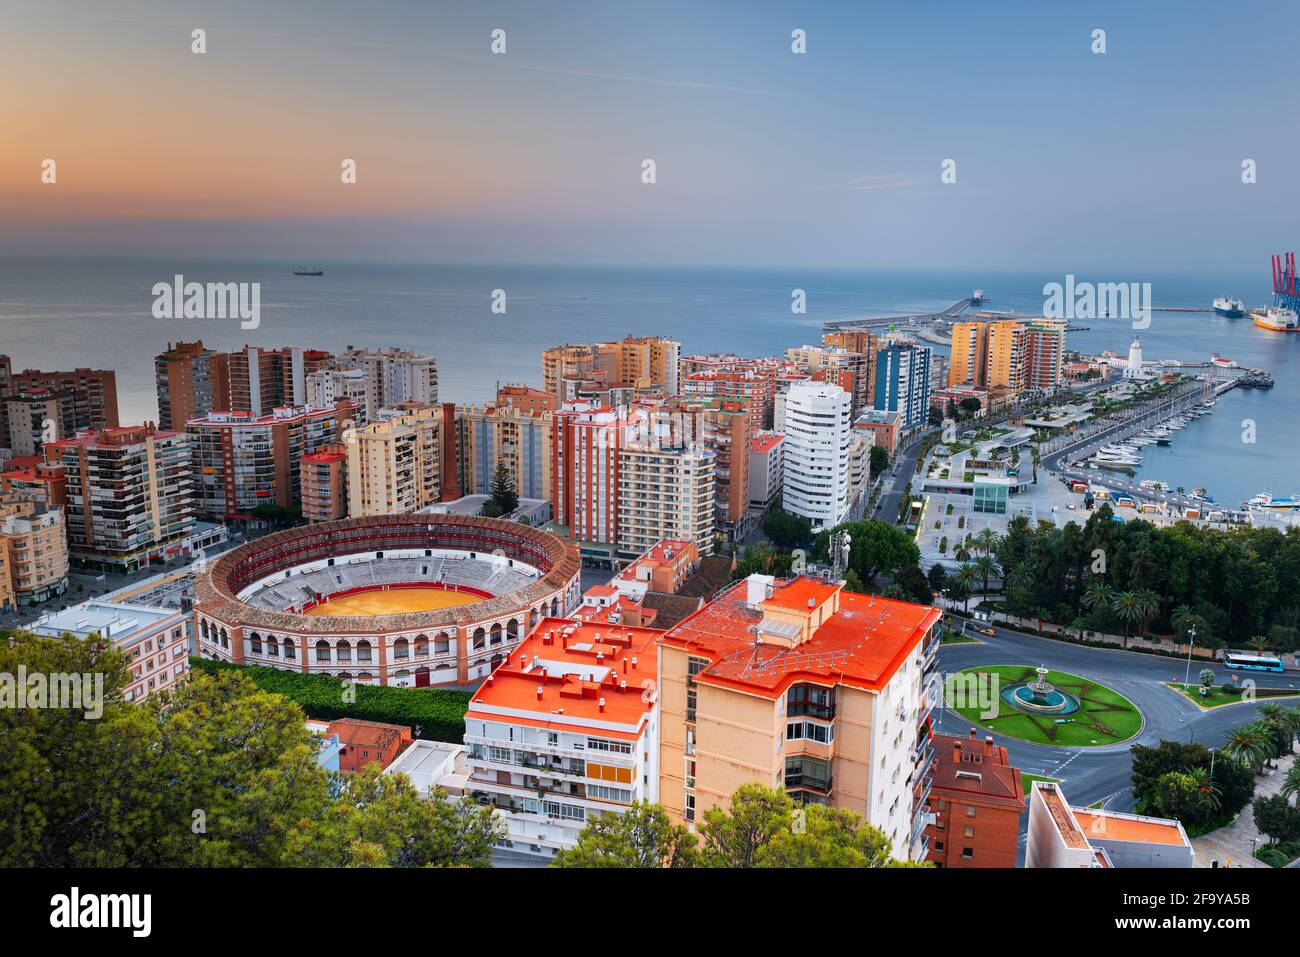 Malaga, Espagne aube vers la mer Méditerranée au crépuscule. Banque D'Images